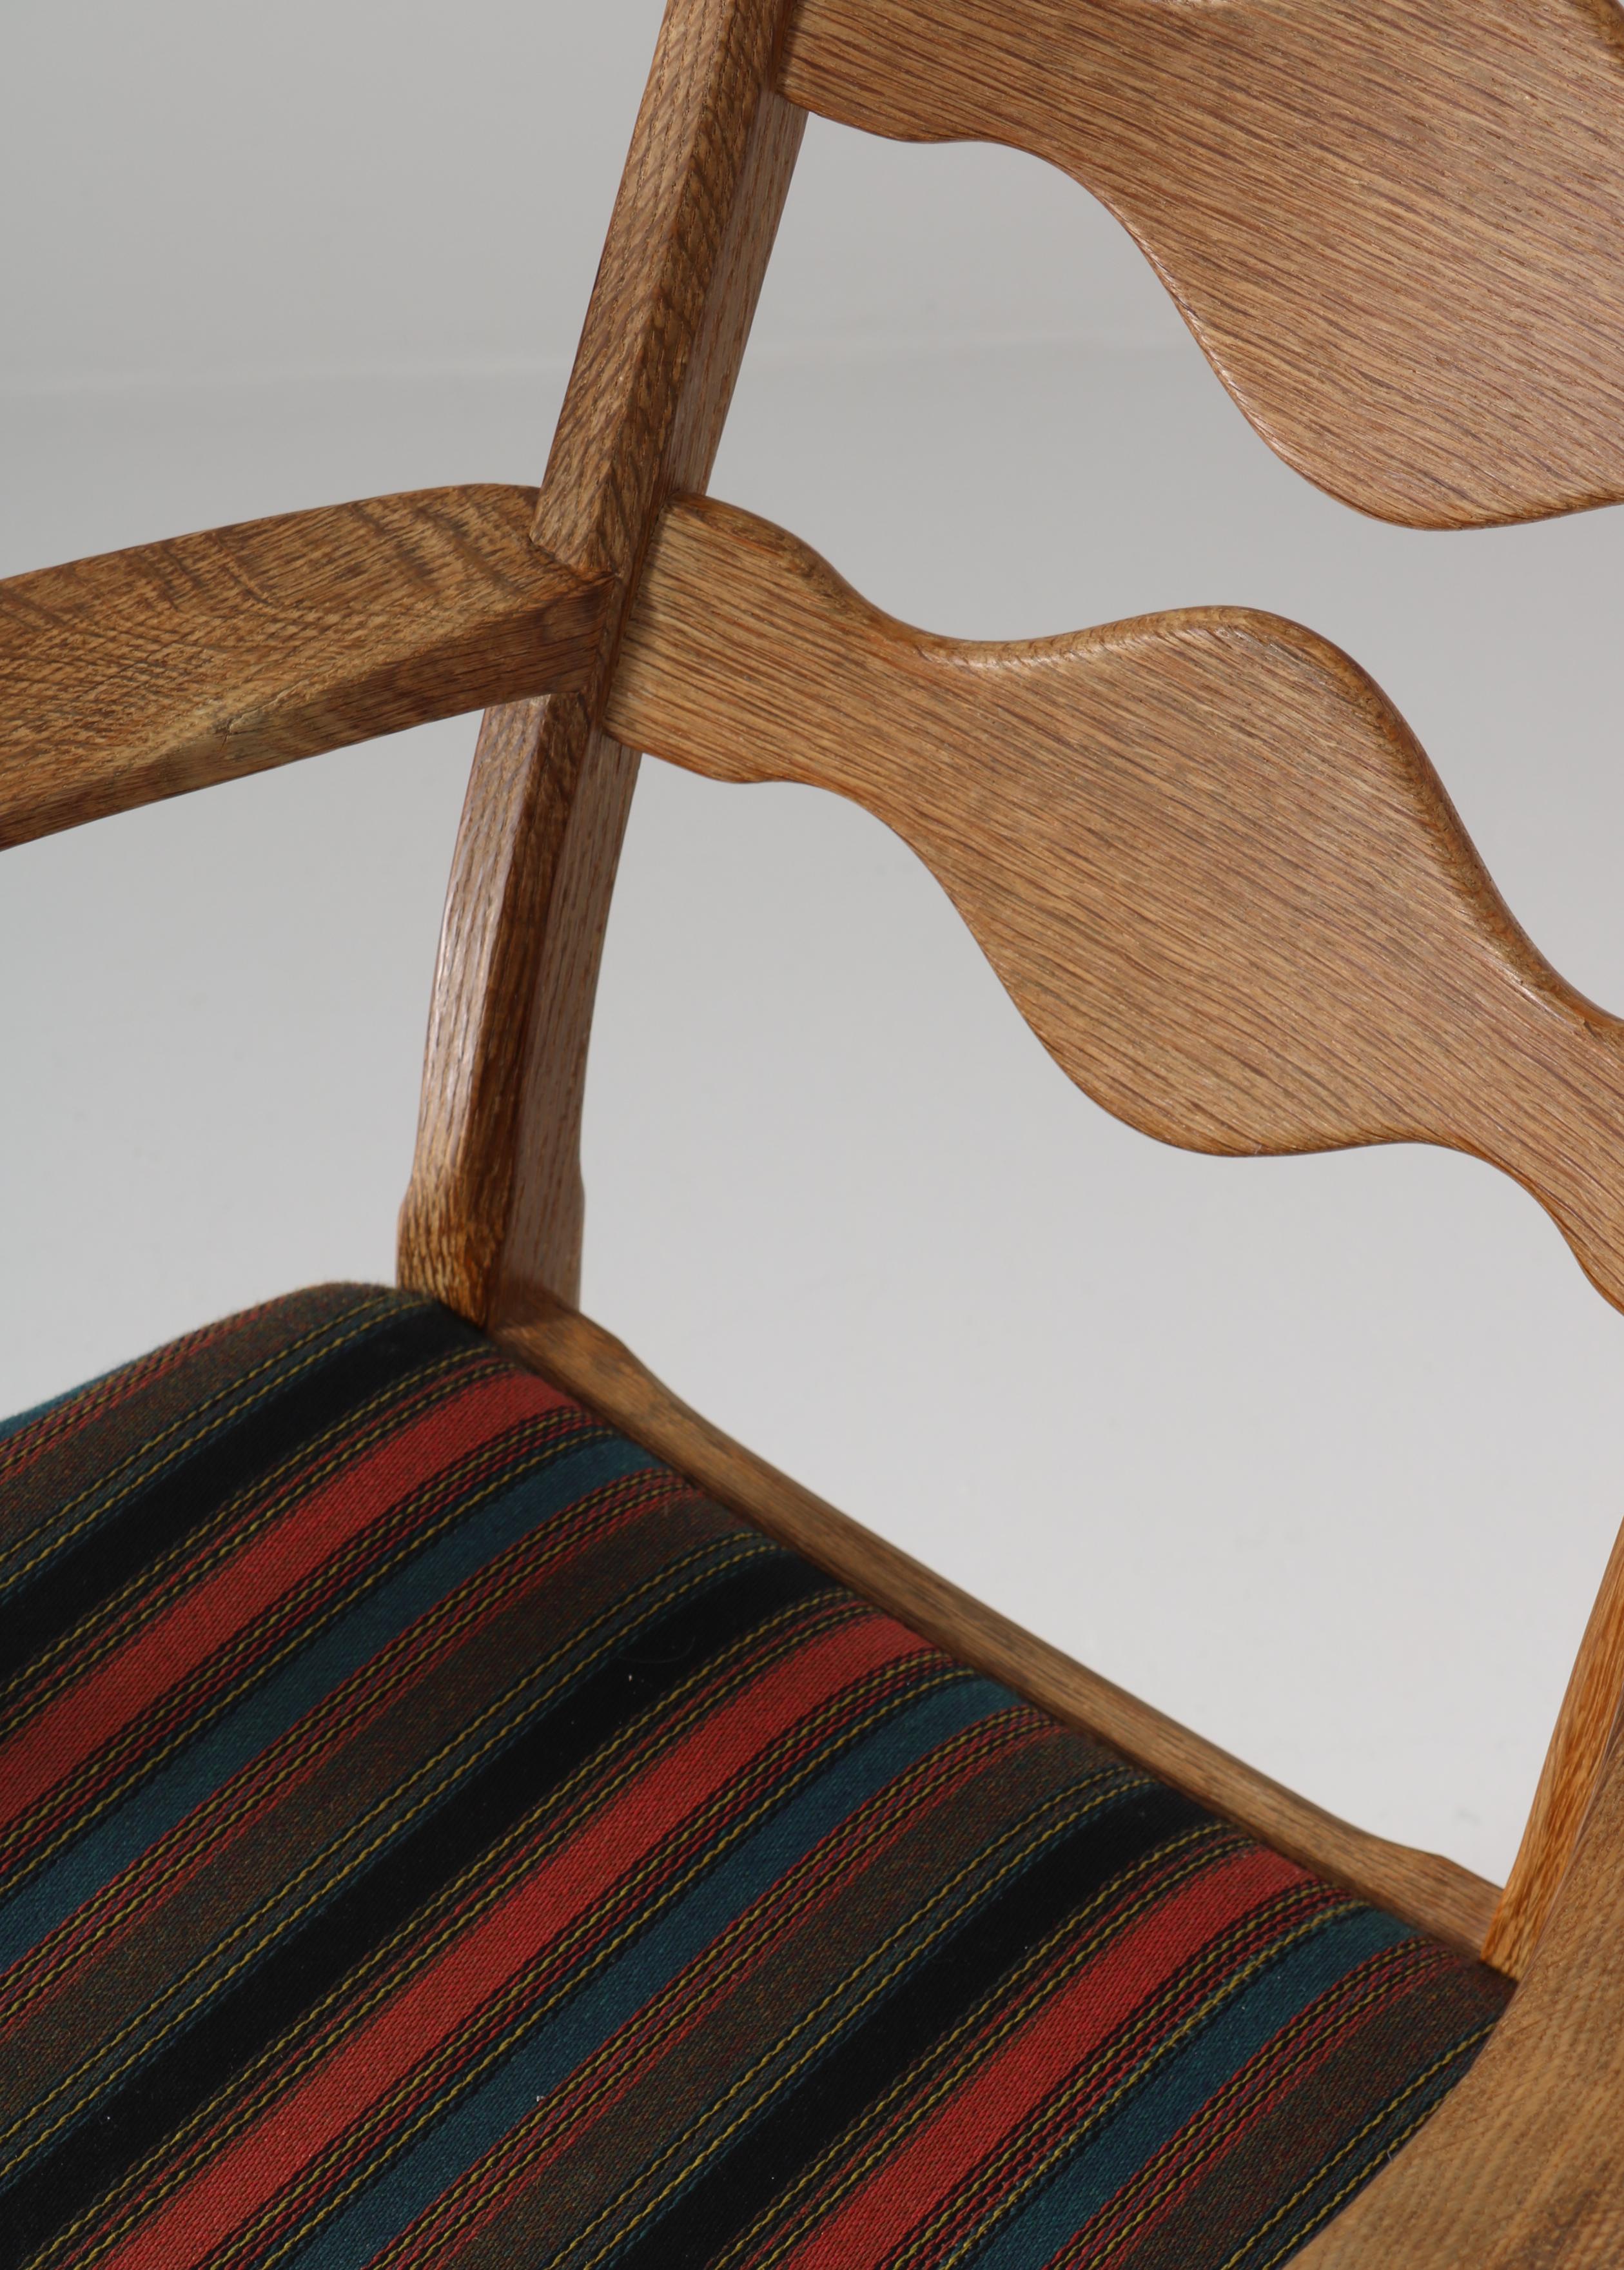 1960s Arm Chair in Oak & Wool Fabric by Henry Kjærnulff, Danish Modern For Sale 4